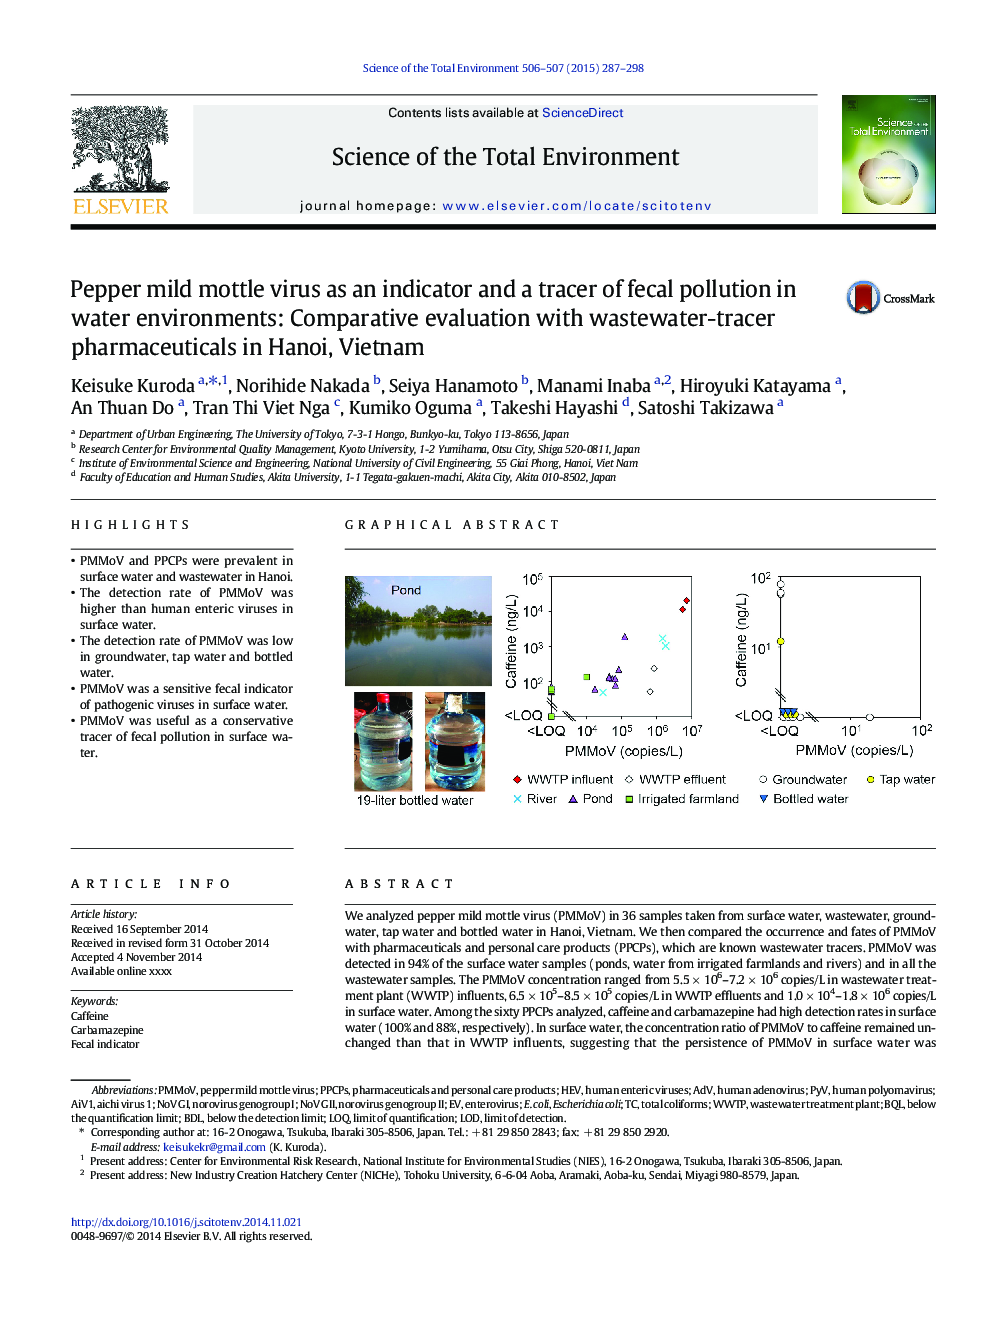 ویروس فلفل مرغ خفیف به عنوان یک شاخص و تکرار آلودگی مدفوع در محیط های آب: ارزیابی مقایسه ای با داروهای فاضلاب تریسی در هانوی، ویتنام 